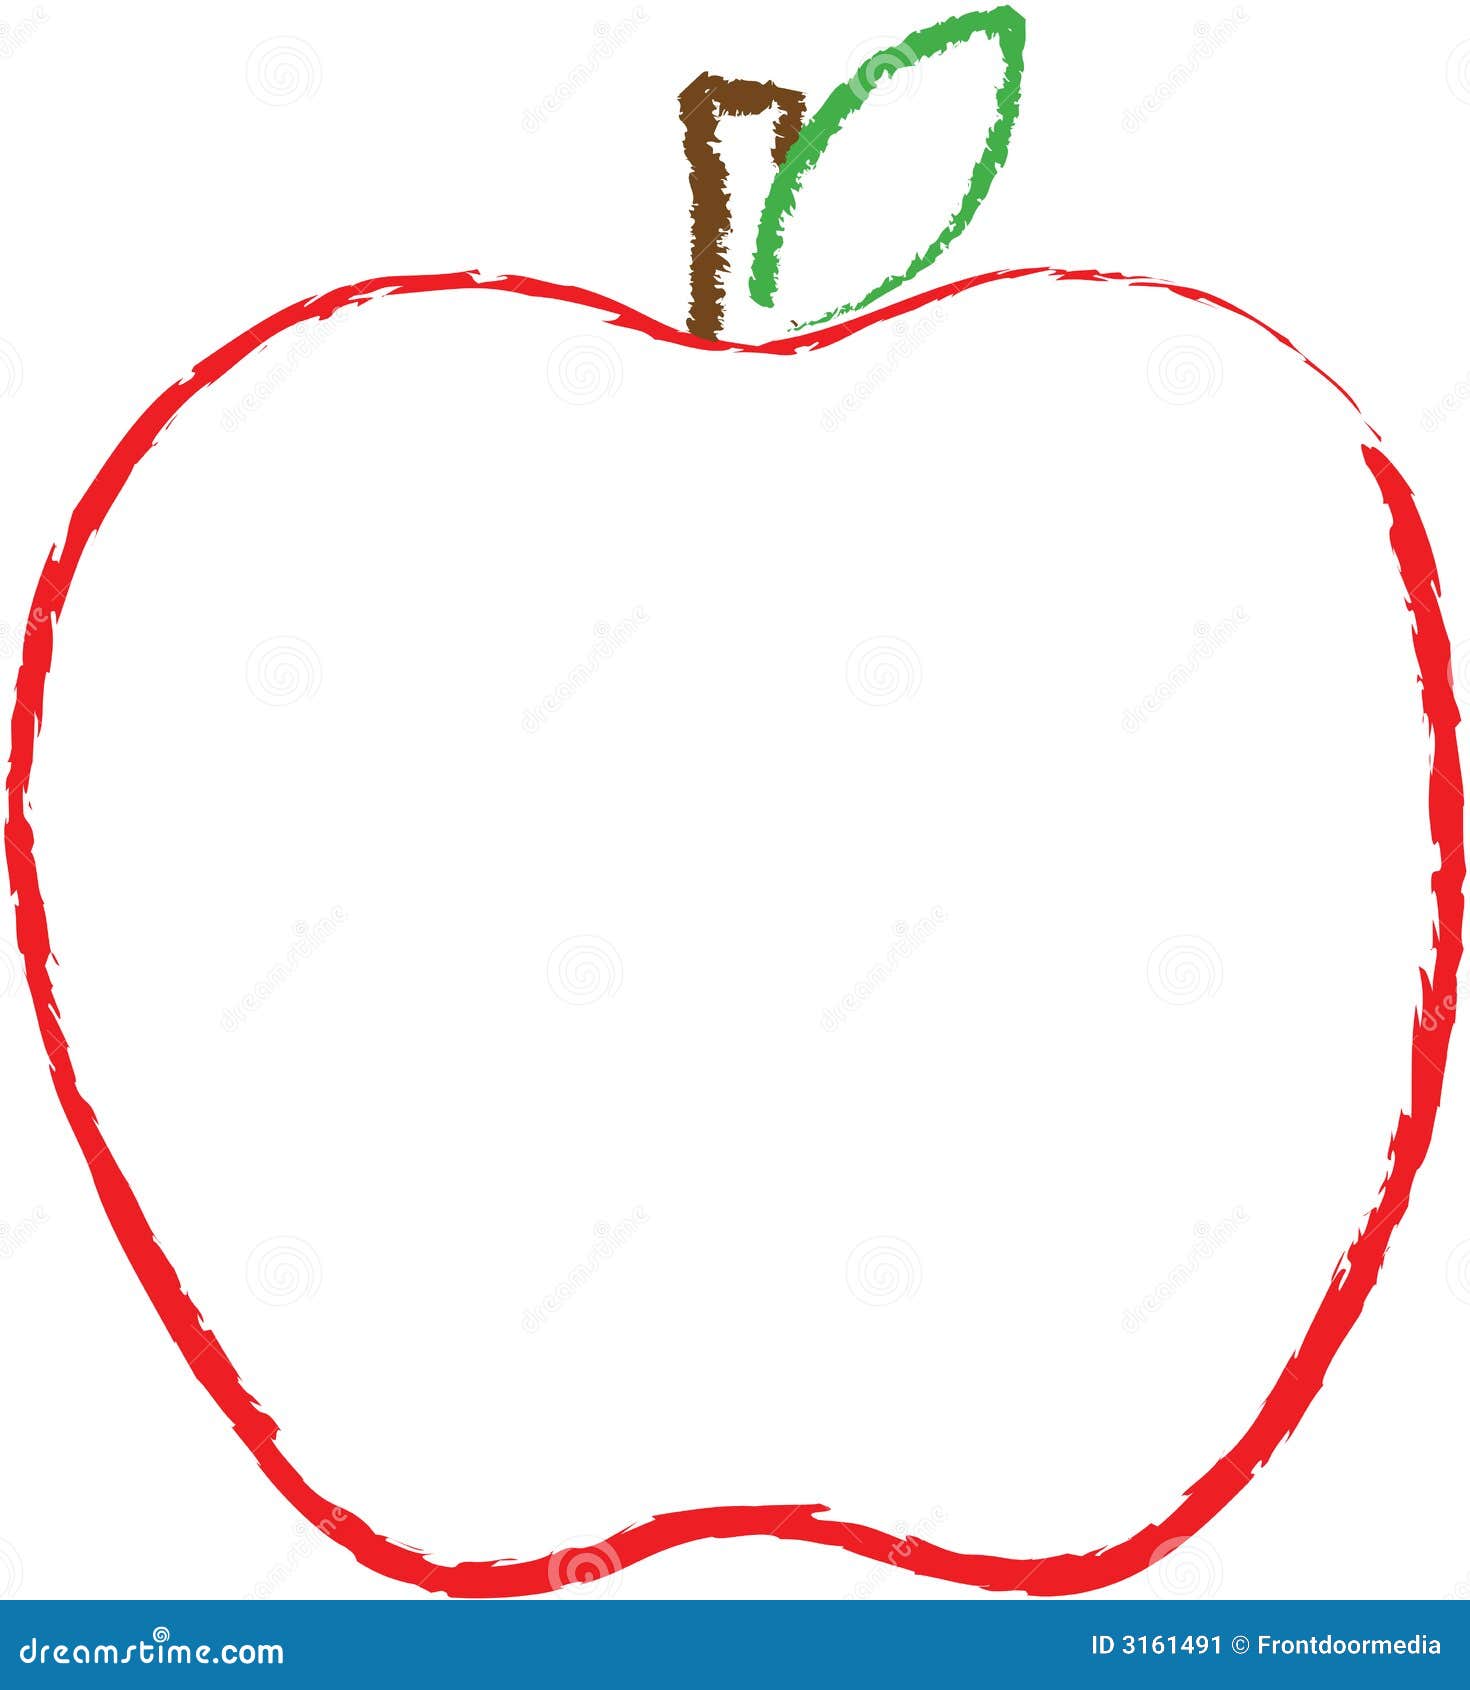 apple outline clip art - photo #35